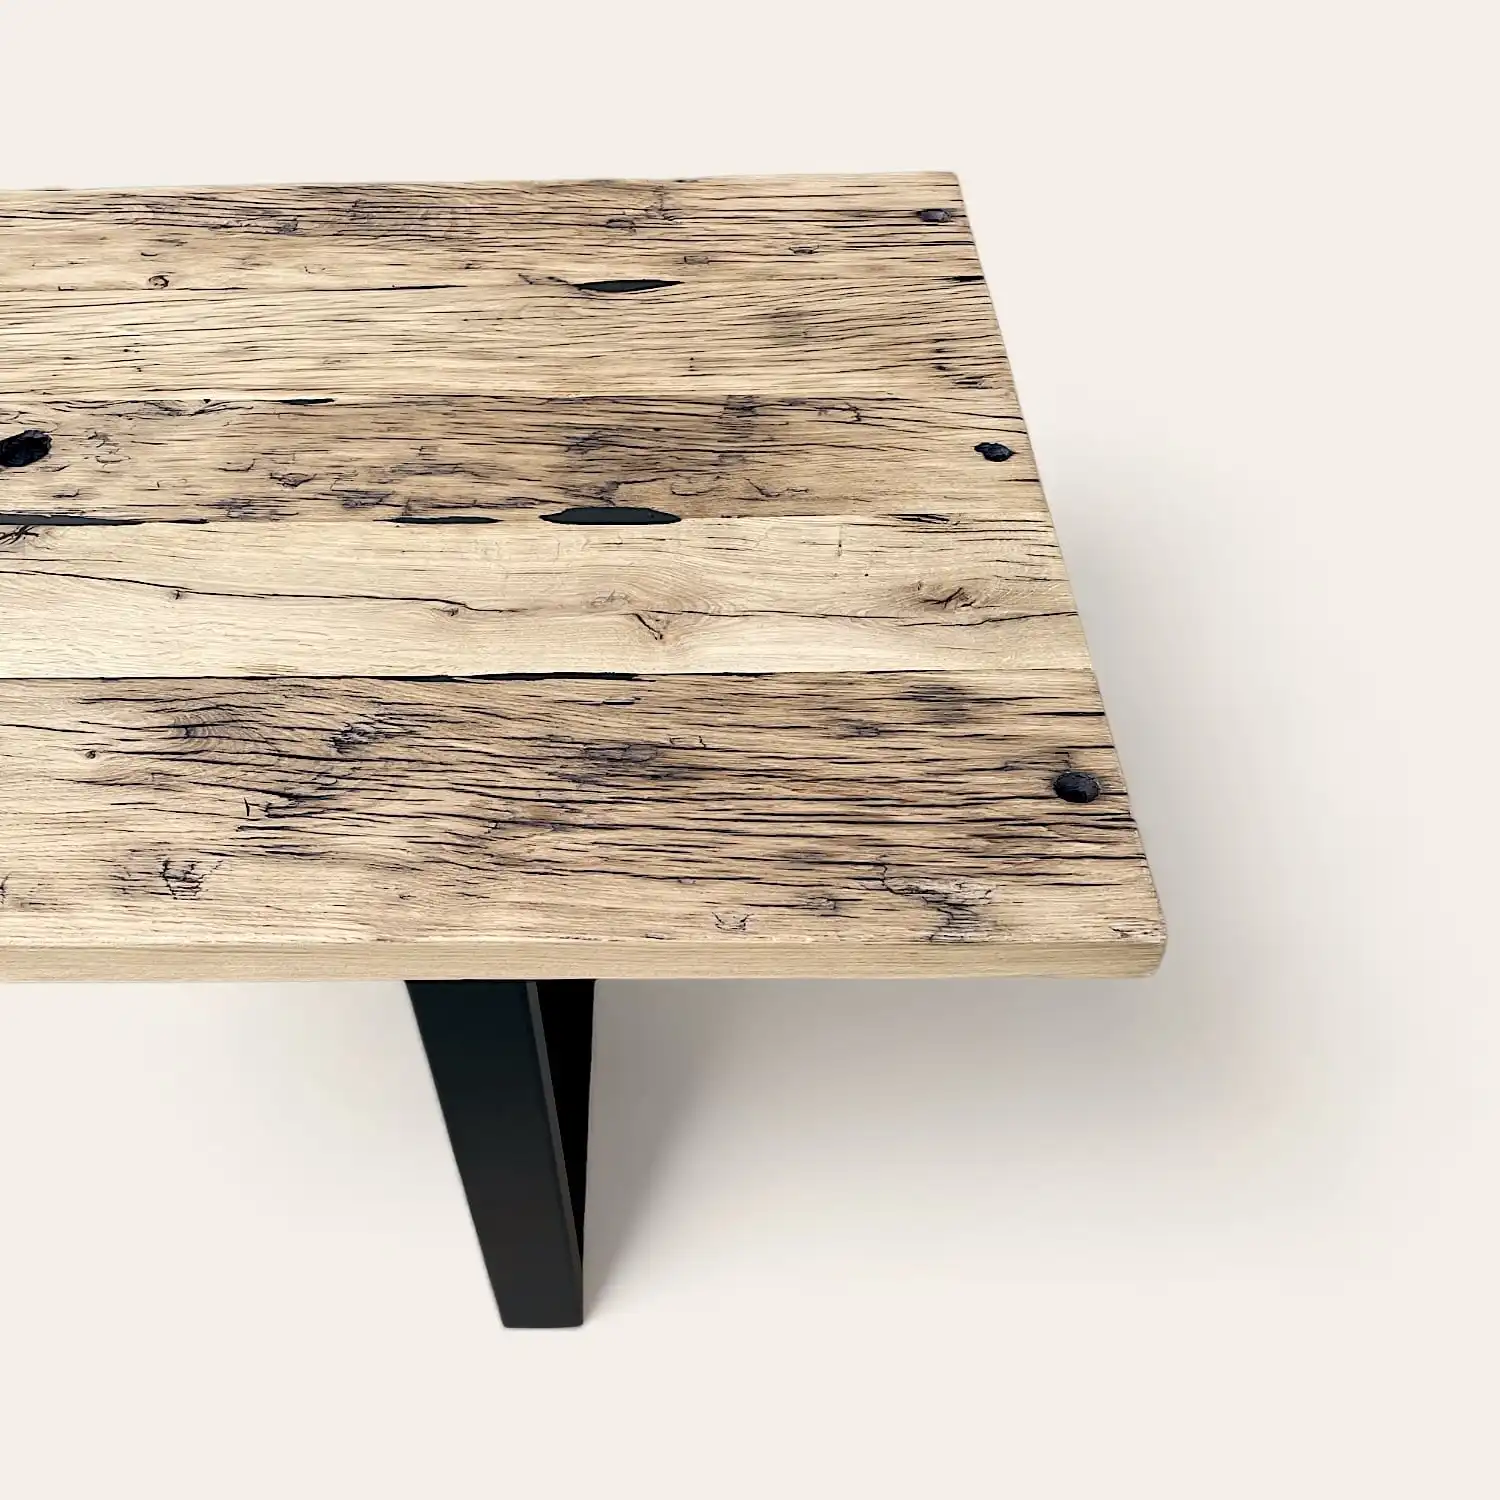  Une table en bois massif avec des pieds noirs sur un fond blanc. 